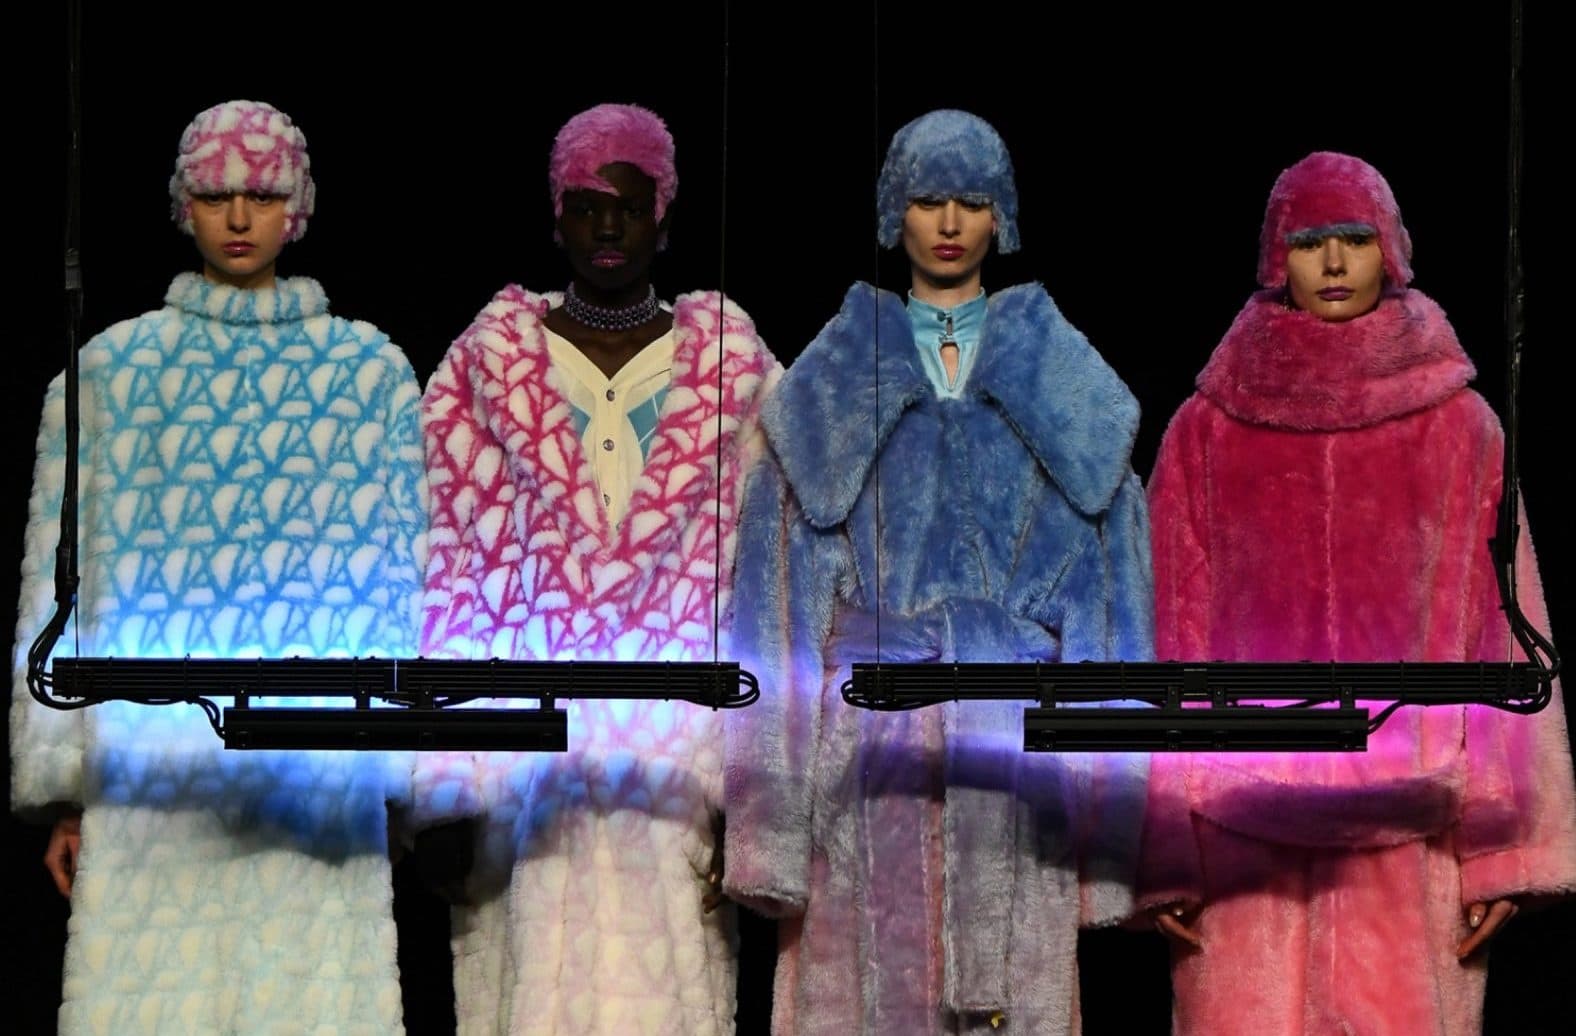 Японский бренд Anrealage показал одежду, которая меняет цвет